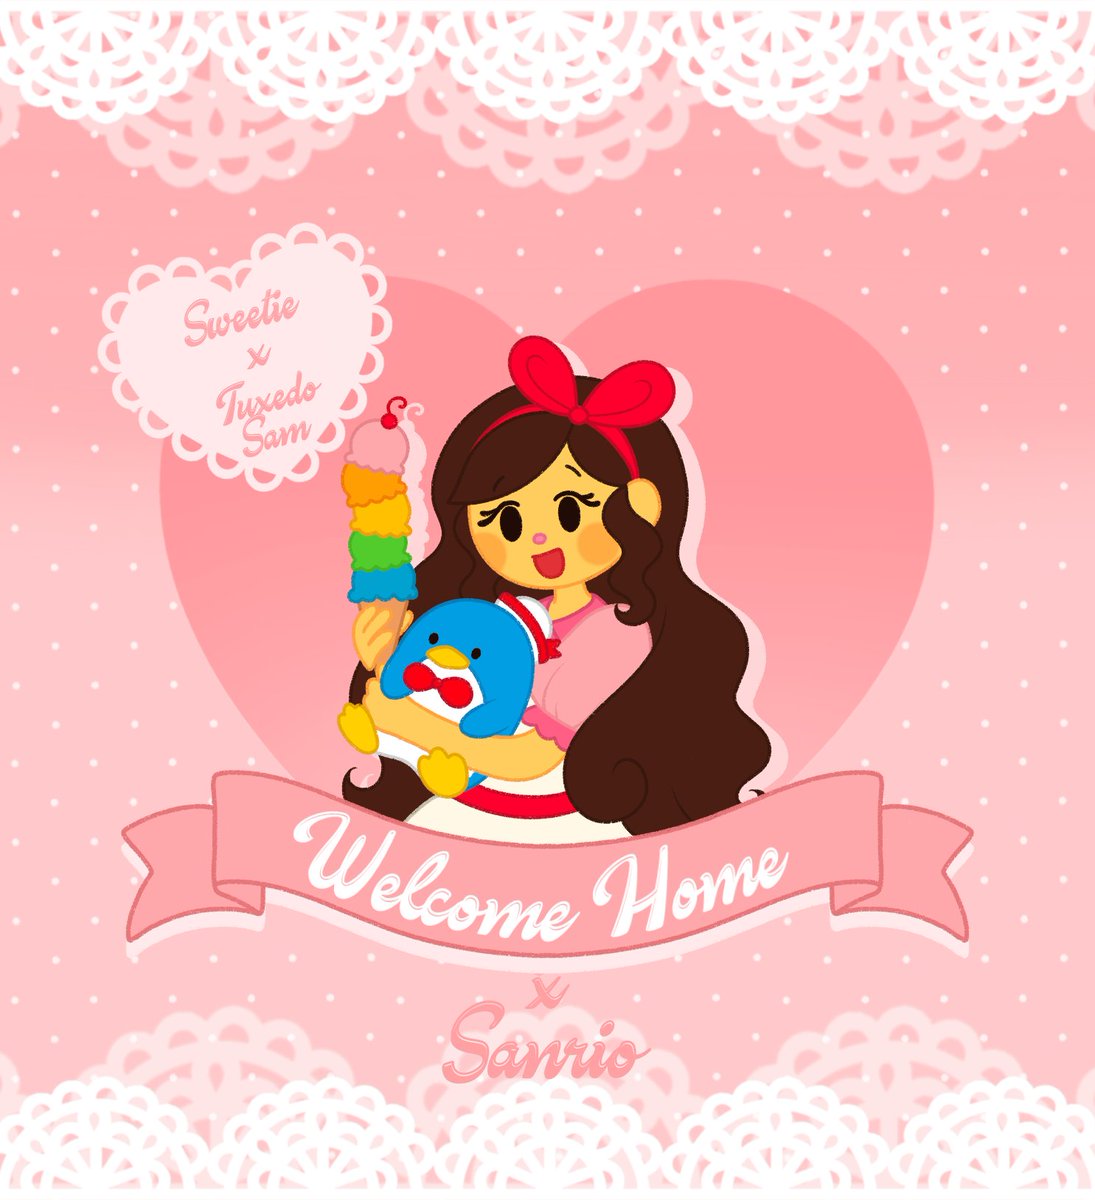 Welcome Home x Sanrio Collab! (1/3)
#welcomehome #welcomehomefanart #Sanrio
#WallyDarling #juliejoyful #taylorsweetie #HelloKitty #usahana #tuxedosam